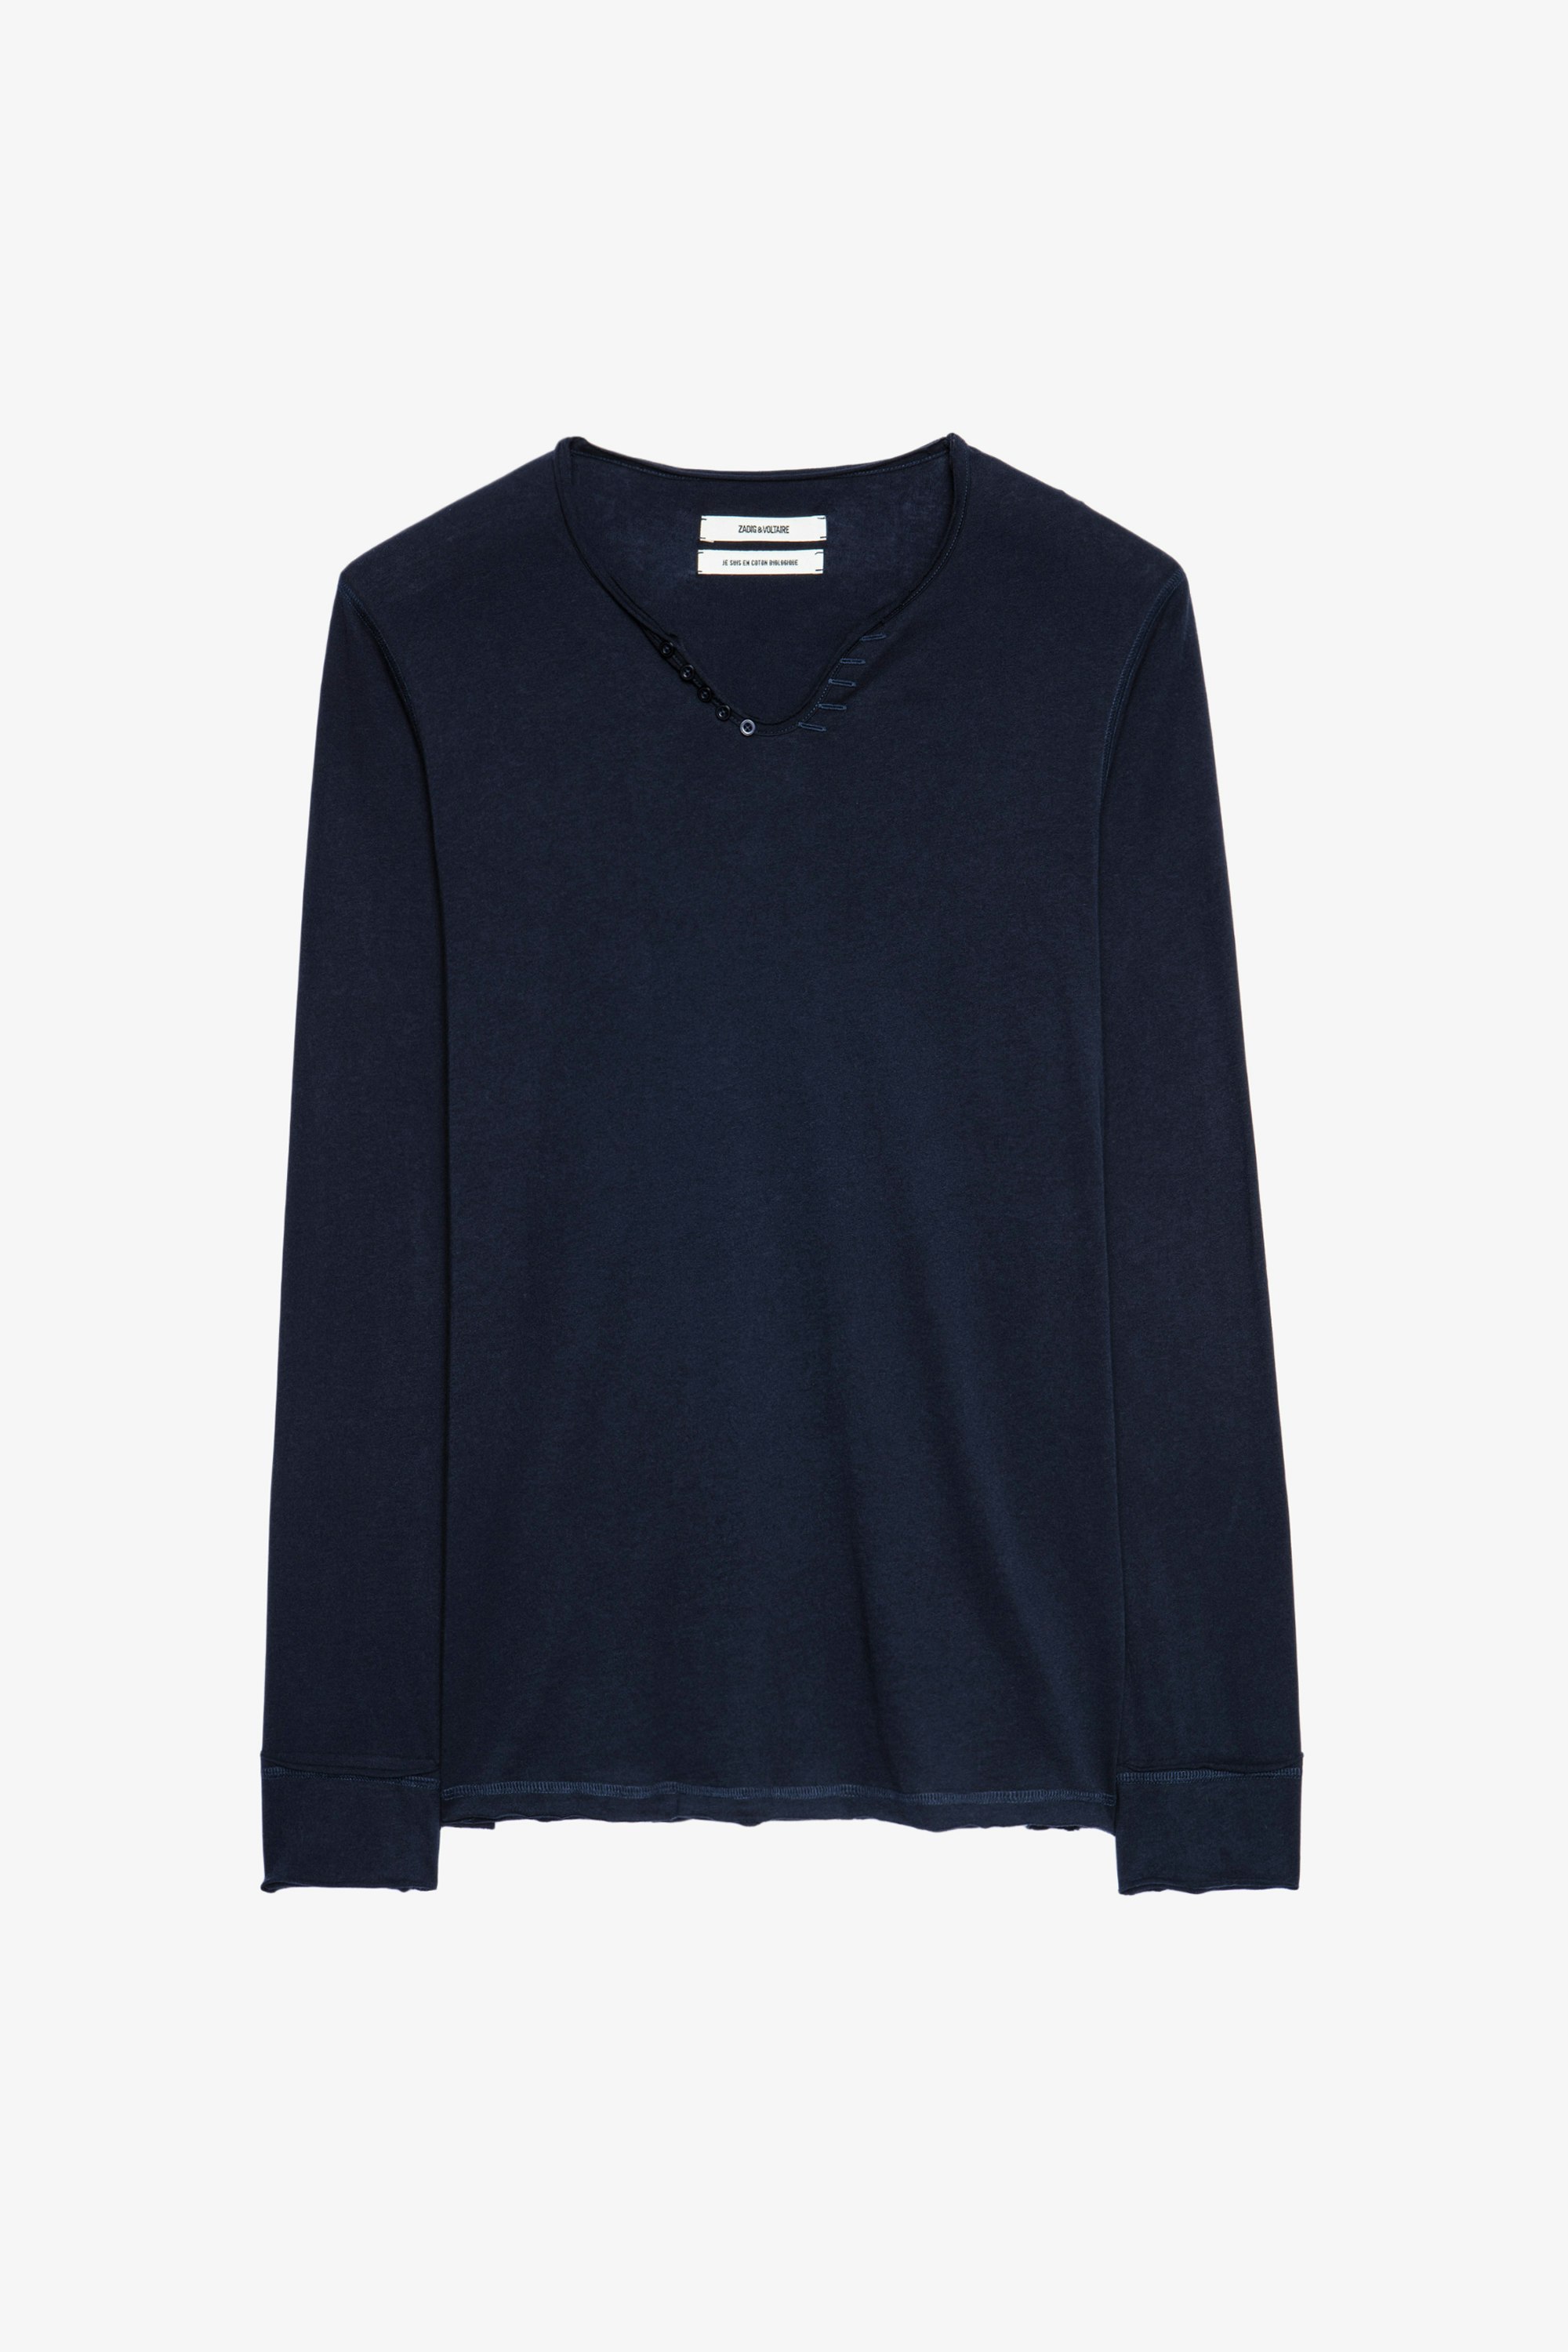 T-shirt Serafino Monastir - T-shirt blu in cotone con collo a serafino